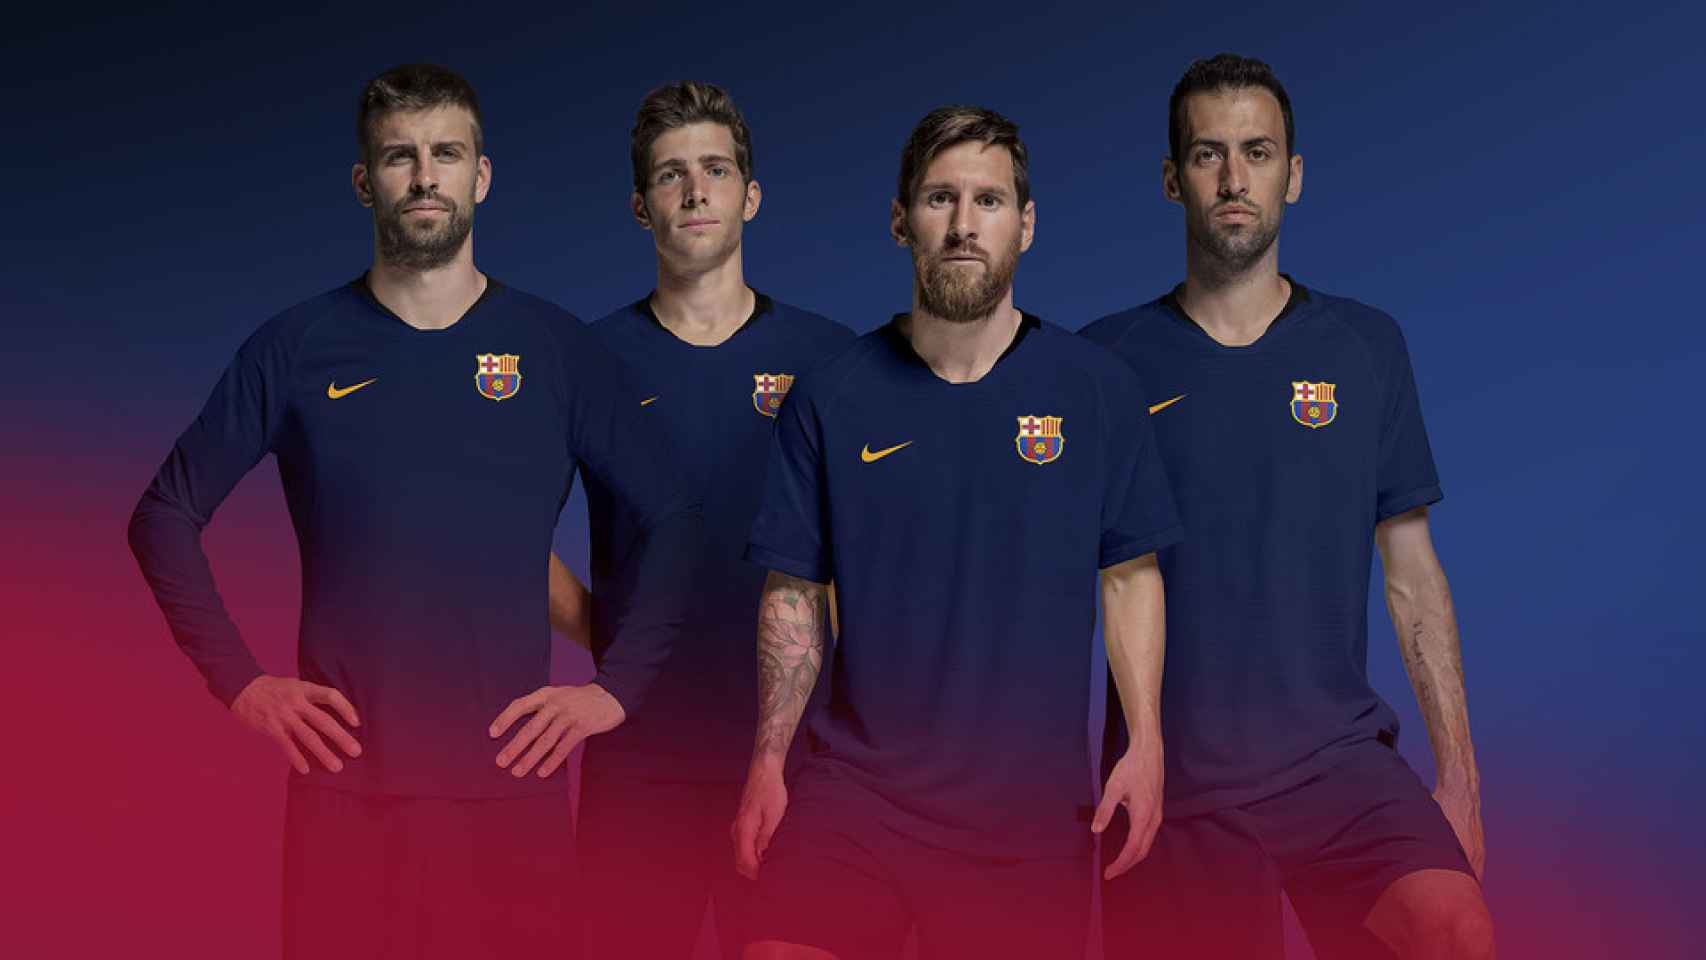 Simulación del nuevo escudo del FC Barcelona en la camiseta